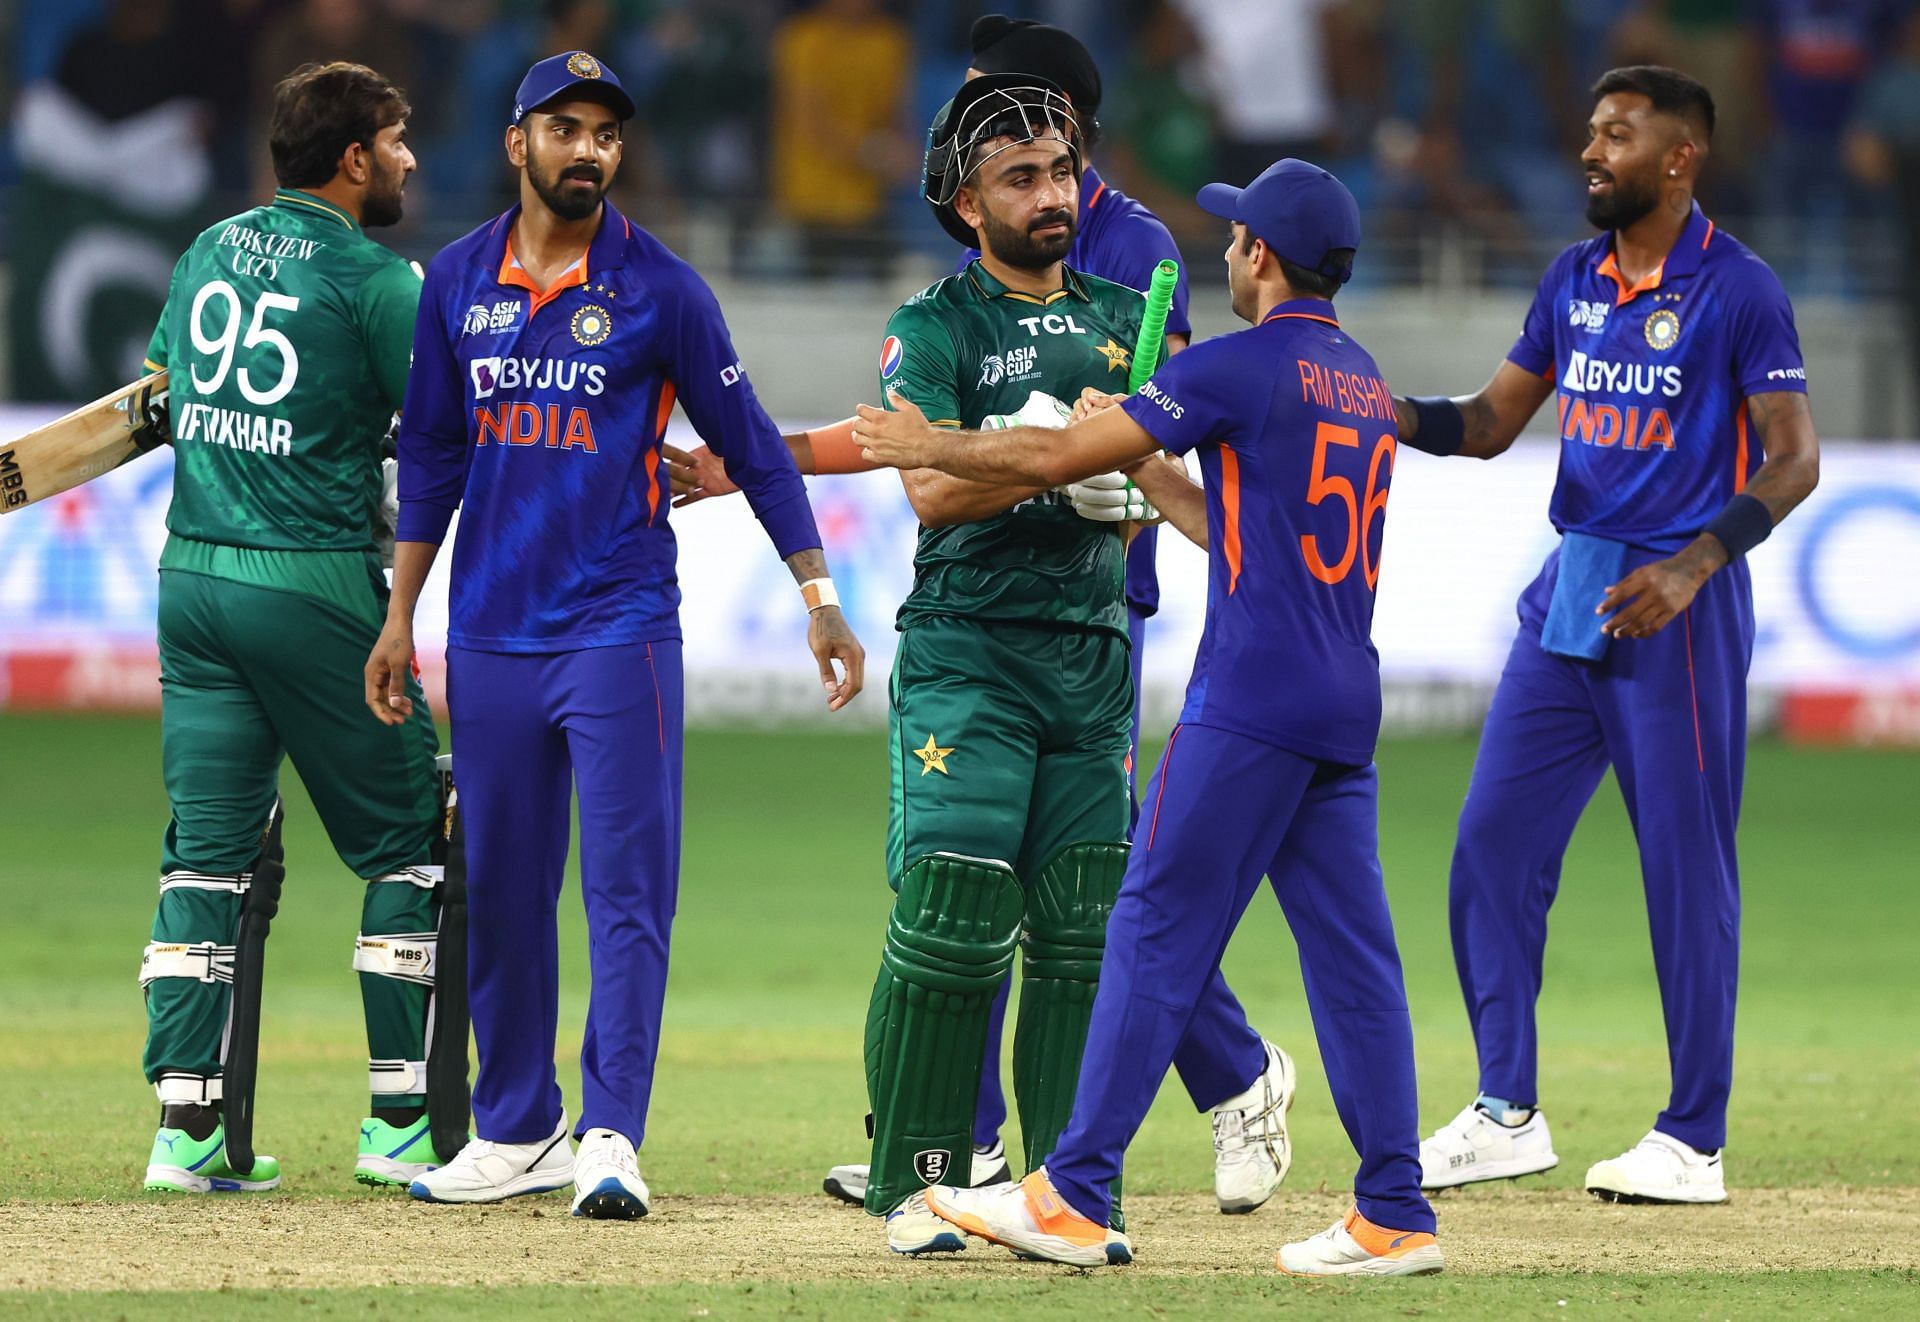 Le Pakistan a battu l'Inde lors de son premier match de Super 4 de la Coupe d'Asie 2022 (Image: Getty)